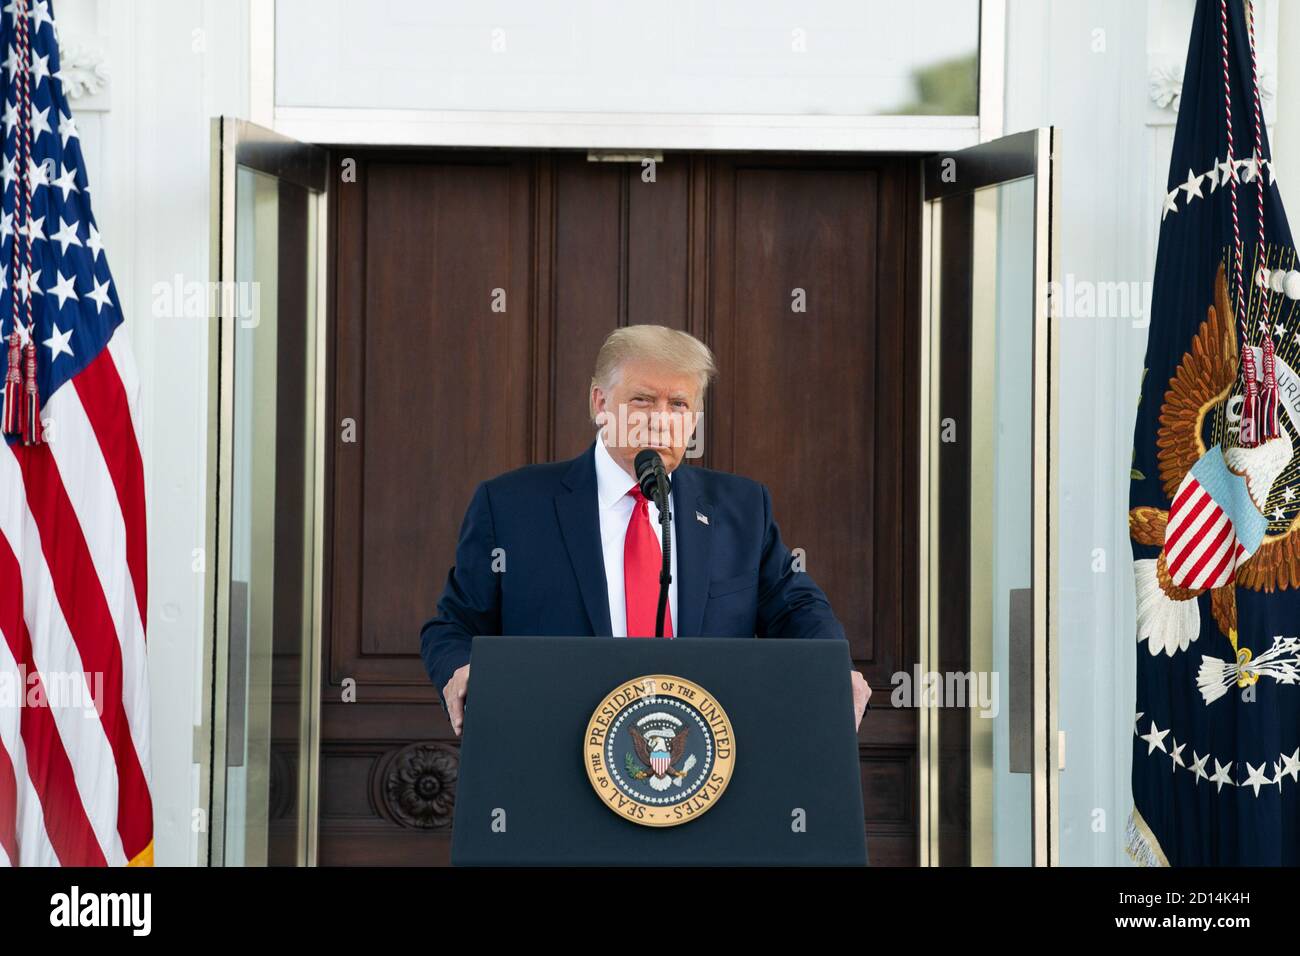 Il presidente Trump partecipa a una conferenza stampa. Il presidente Donald J. Trump ascolta l’interrogazione di un giornalista durante una conferenza stampa lunedì 7 settembre 2020 sul portico settentrionale della Casa Bianca. Foto Stock